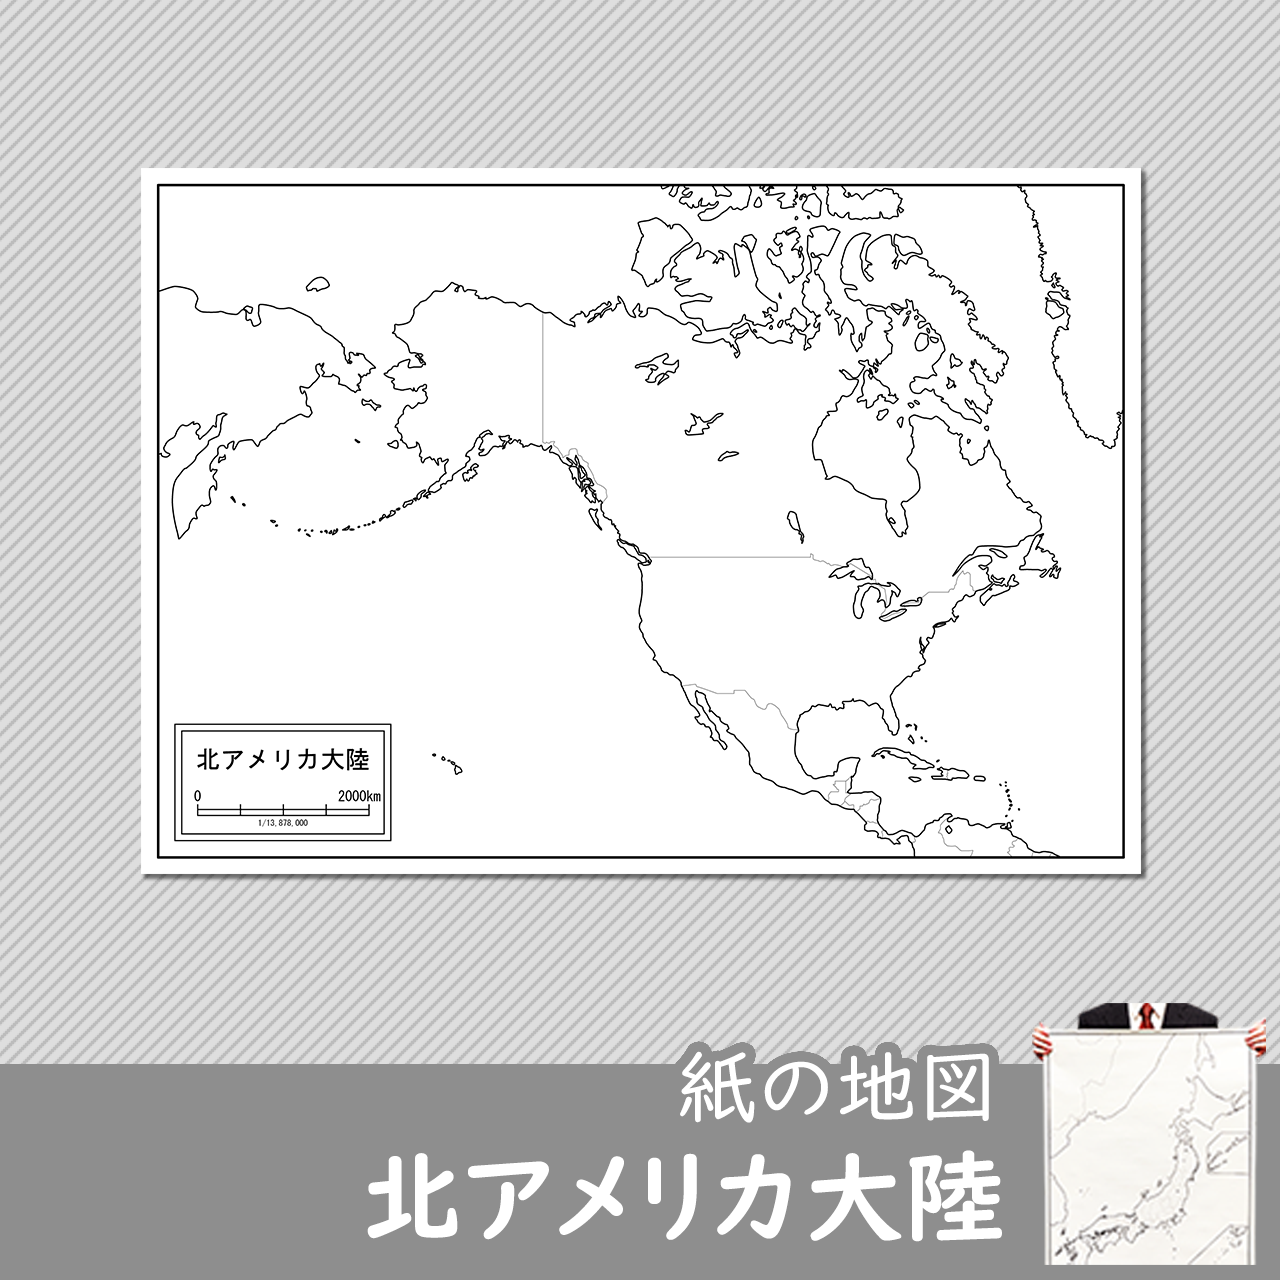 北アメリカ大陸の紙の白地図のサムネイル